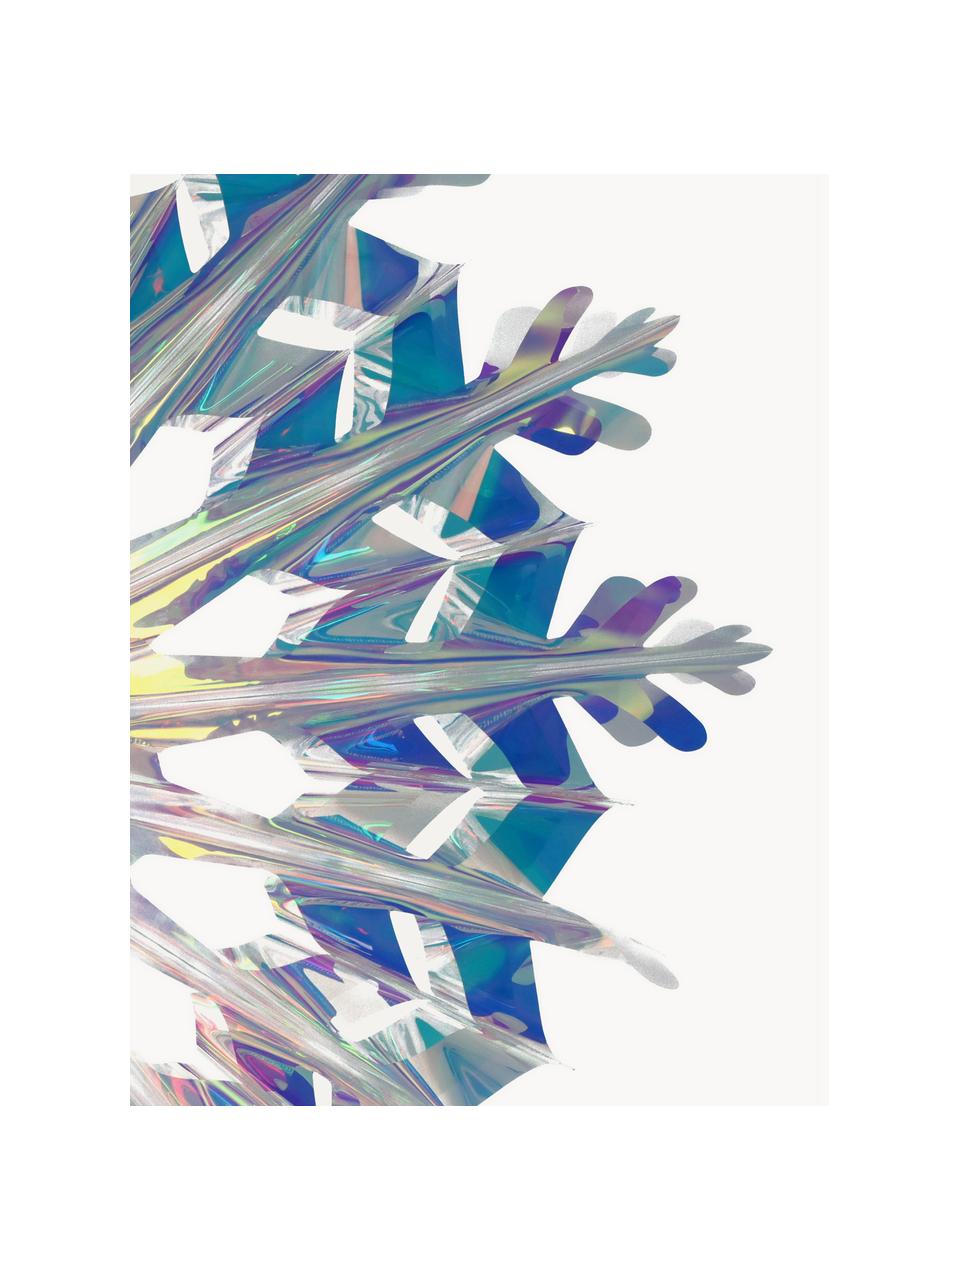 Bombka choinkowa Iridescent, Tworzywo sztuczne, Transparentny, opalizujący, S 45 x W 45 cm